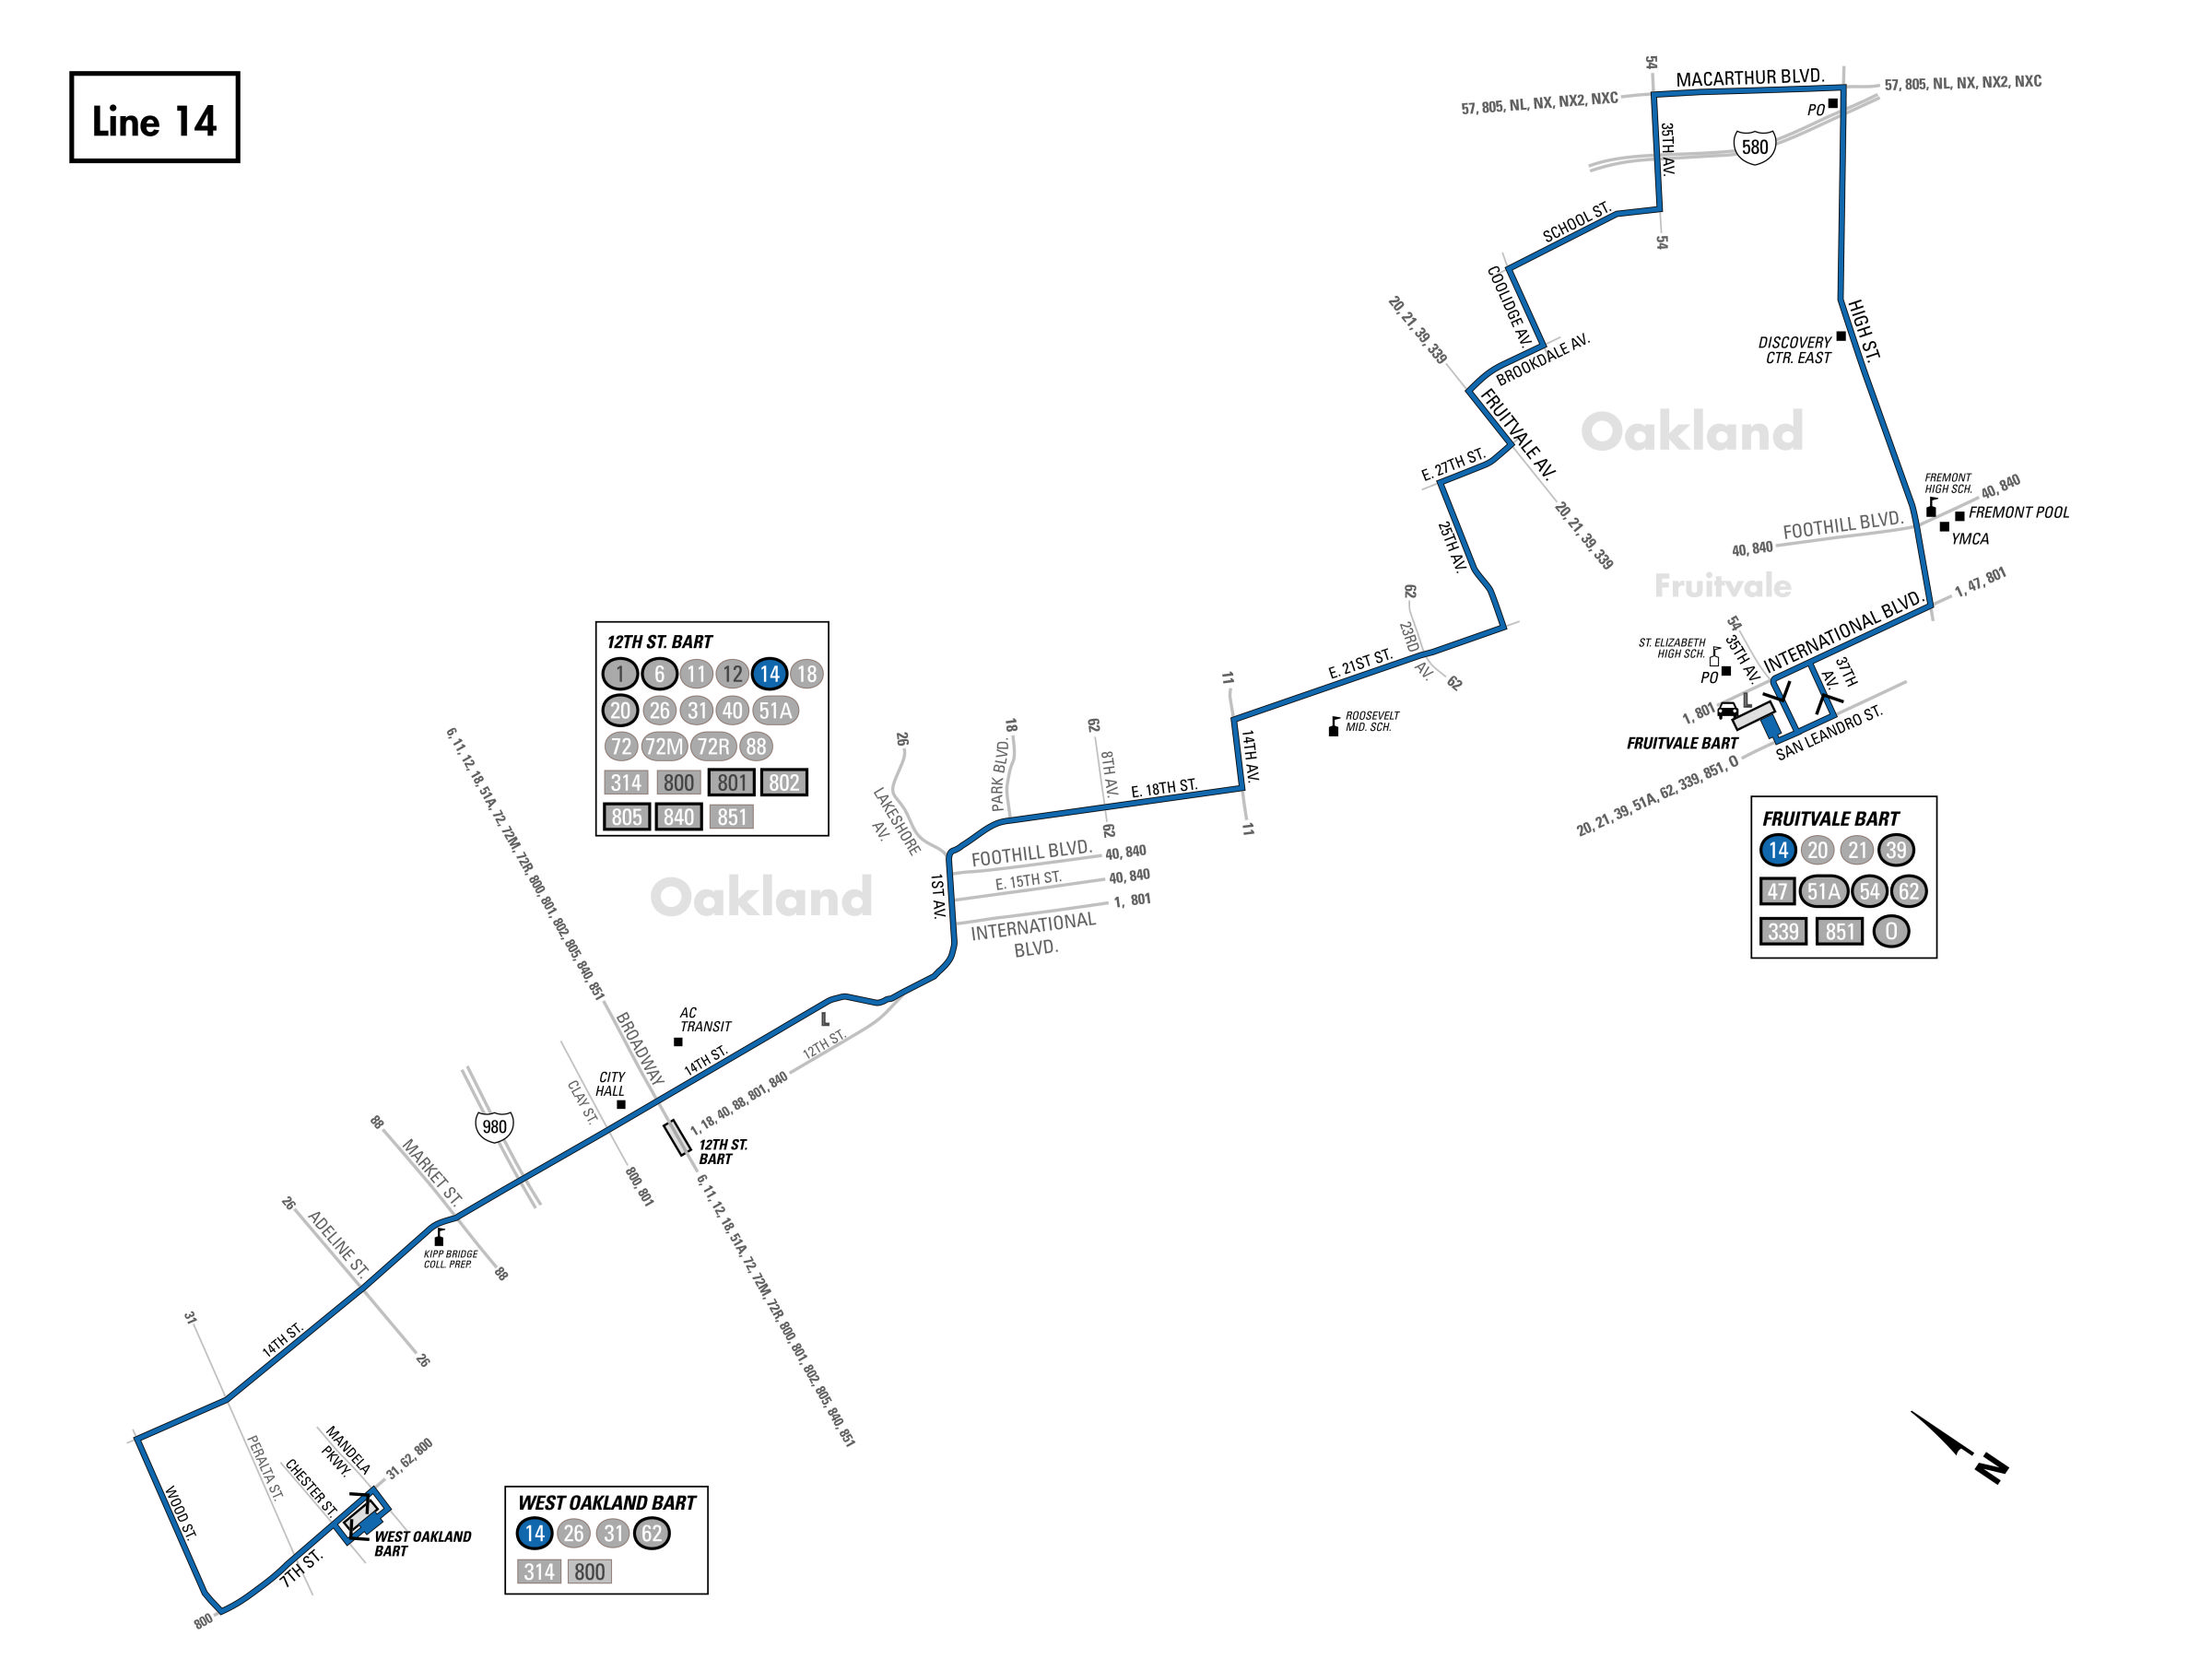 14 Bus Route - AC Transit - SF Bay Transit